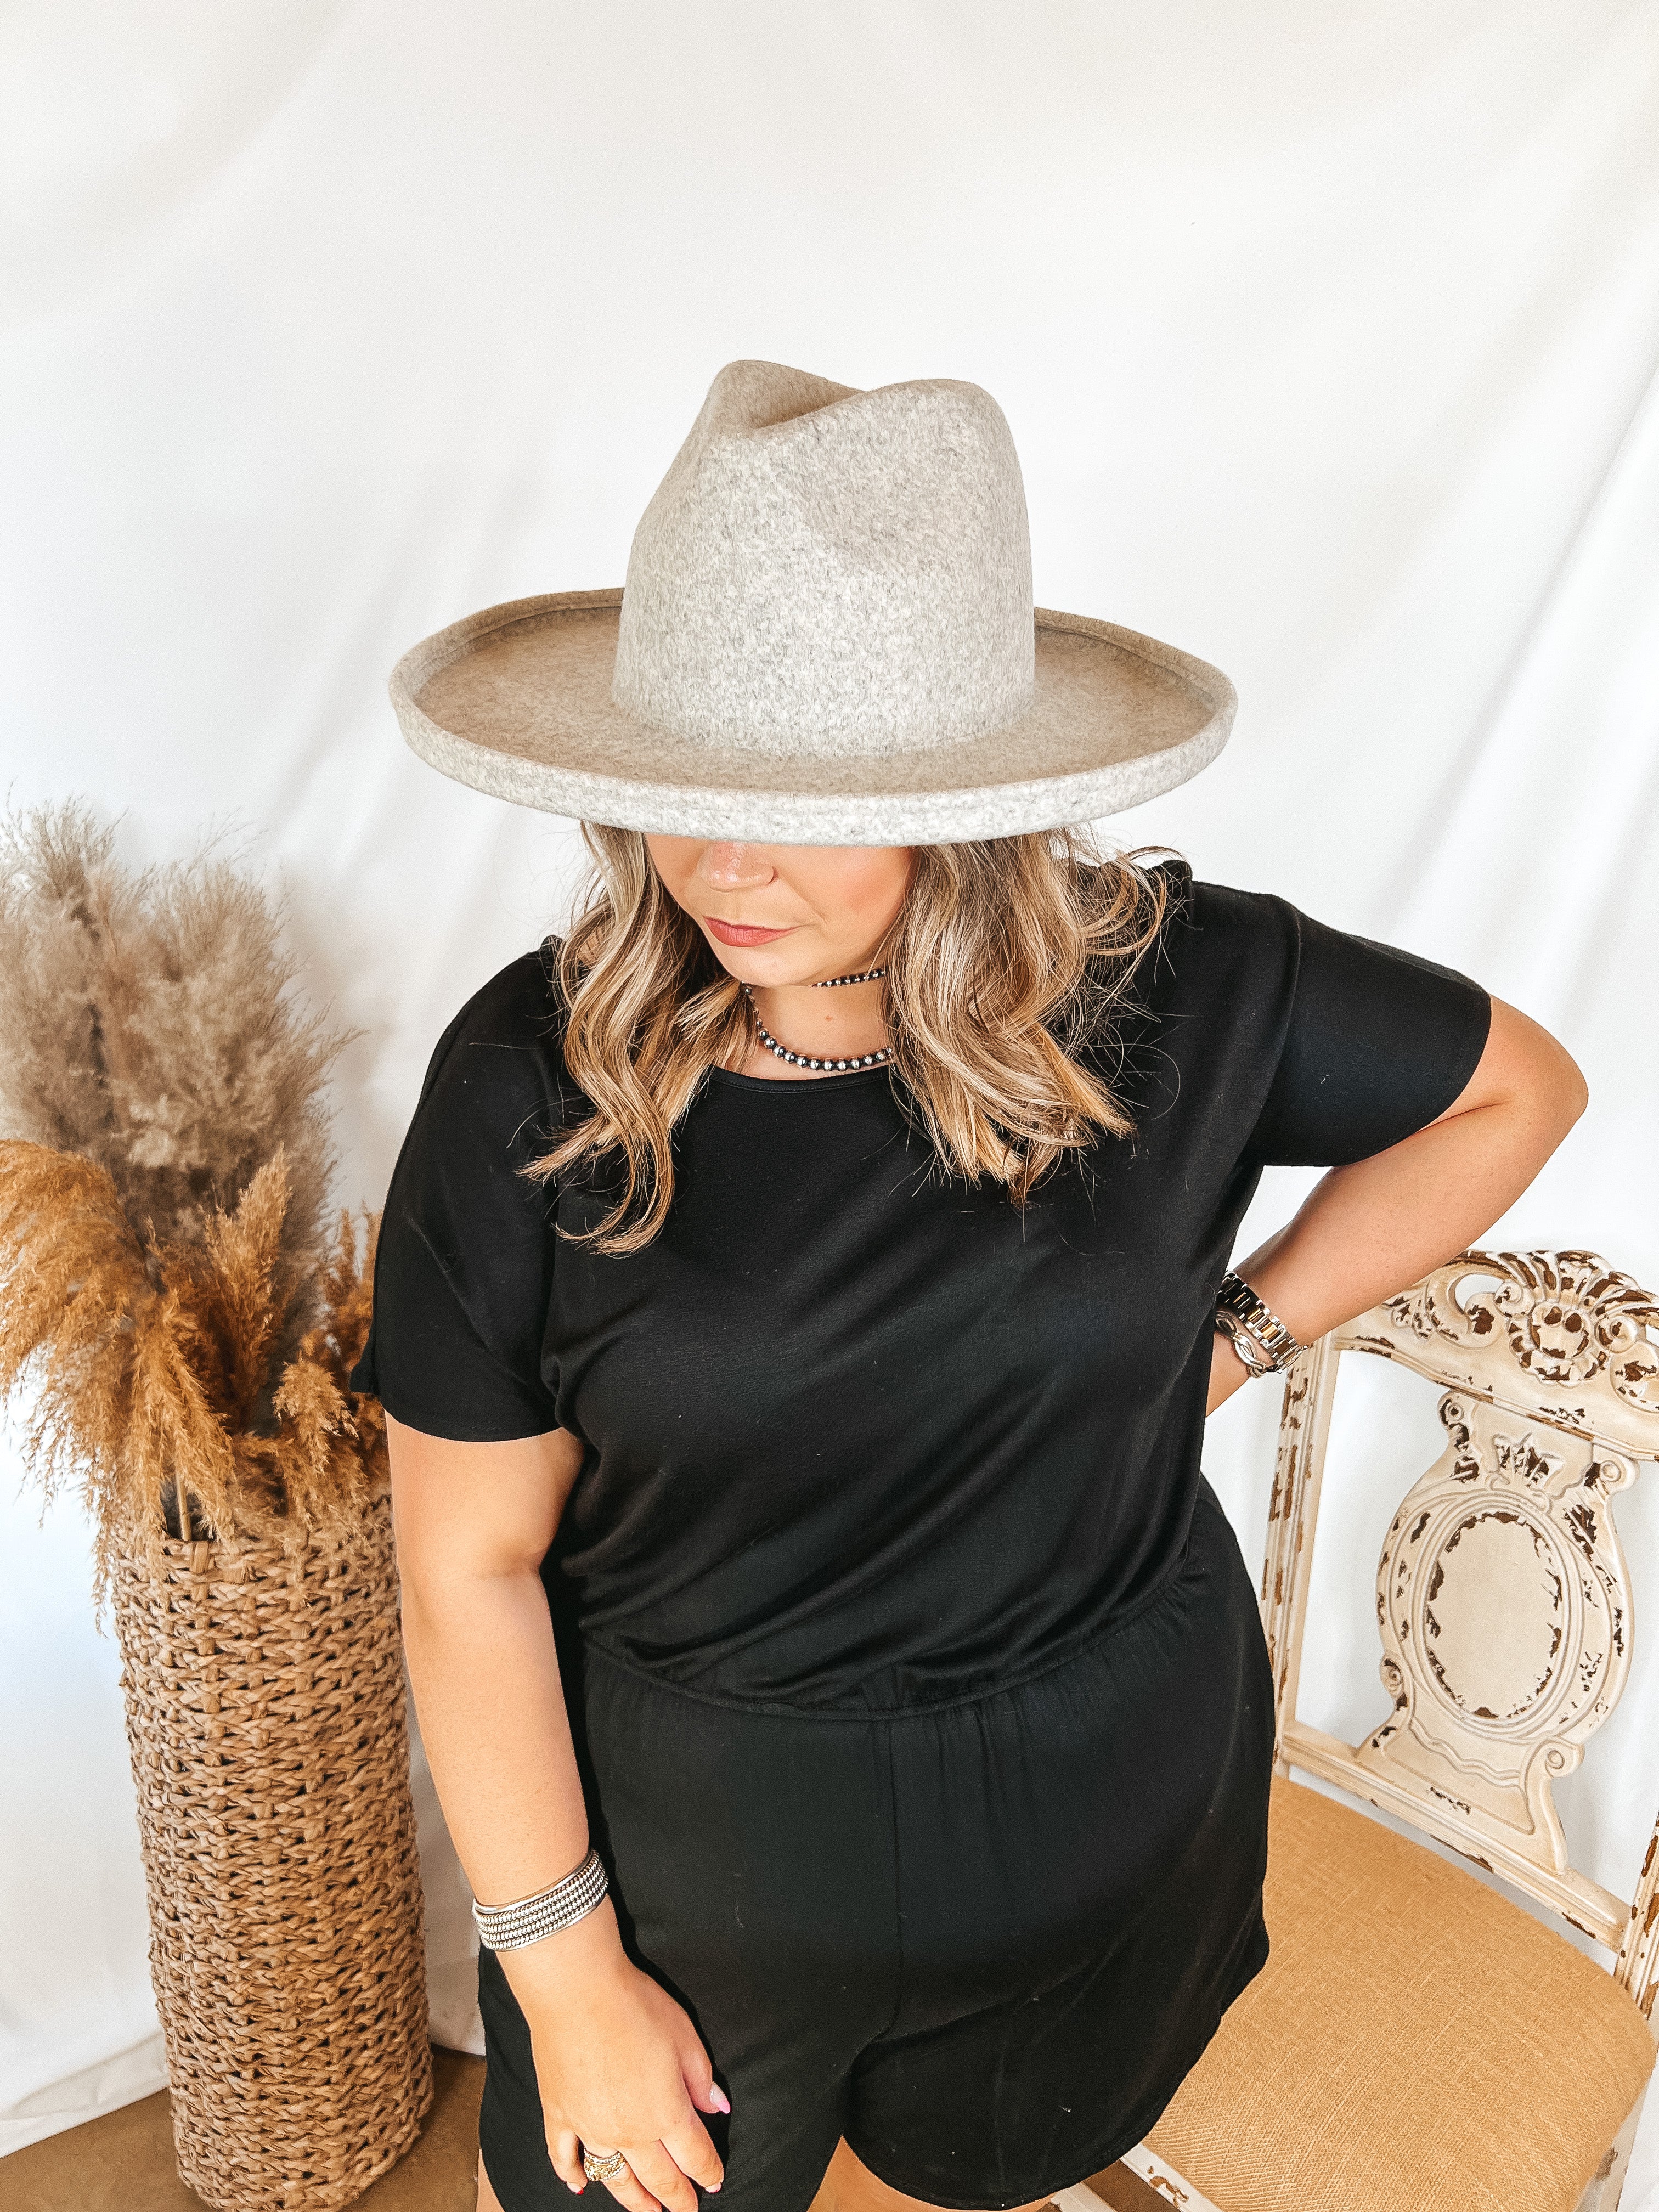 GiGi Pip | Cara Loren Pencil Brim Wool Felt Hat in Heather Grey